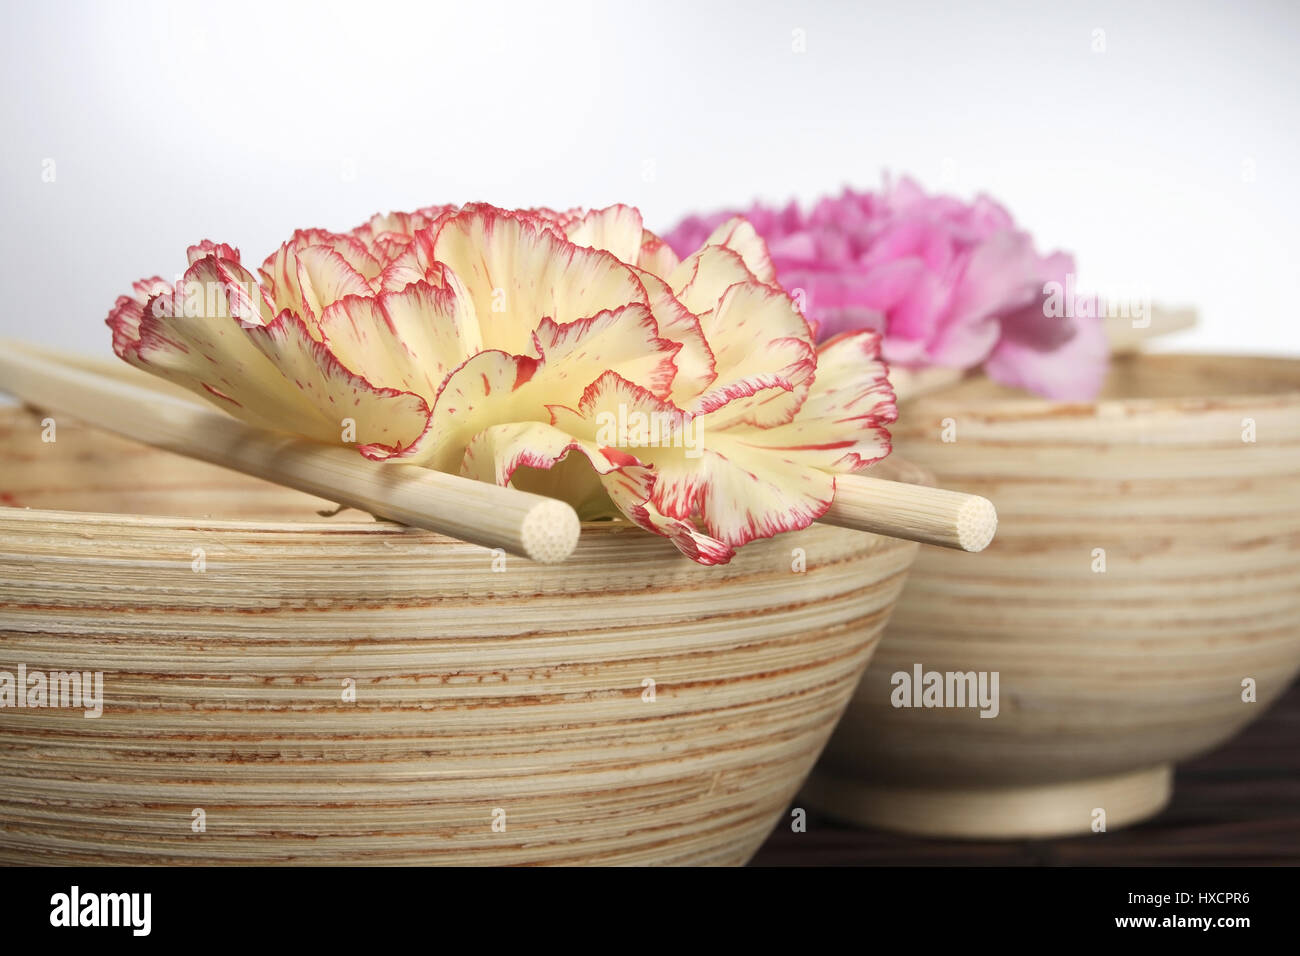 Wooden bowls with rod and carnation blossoms, Holzschalen mit Staebchen und Nelkenblueten Stock Photo